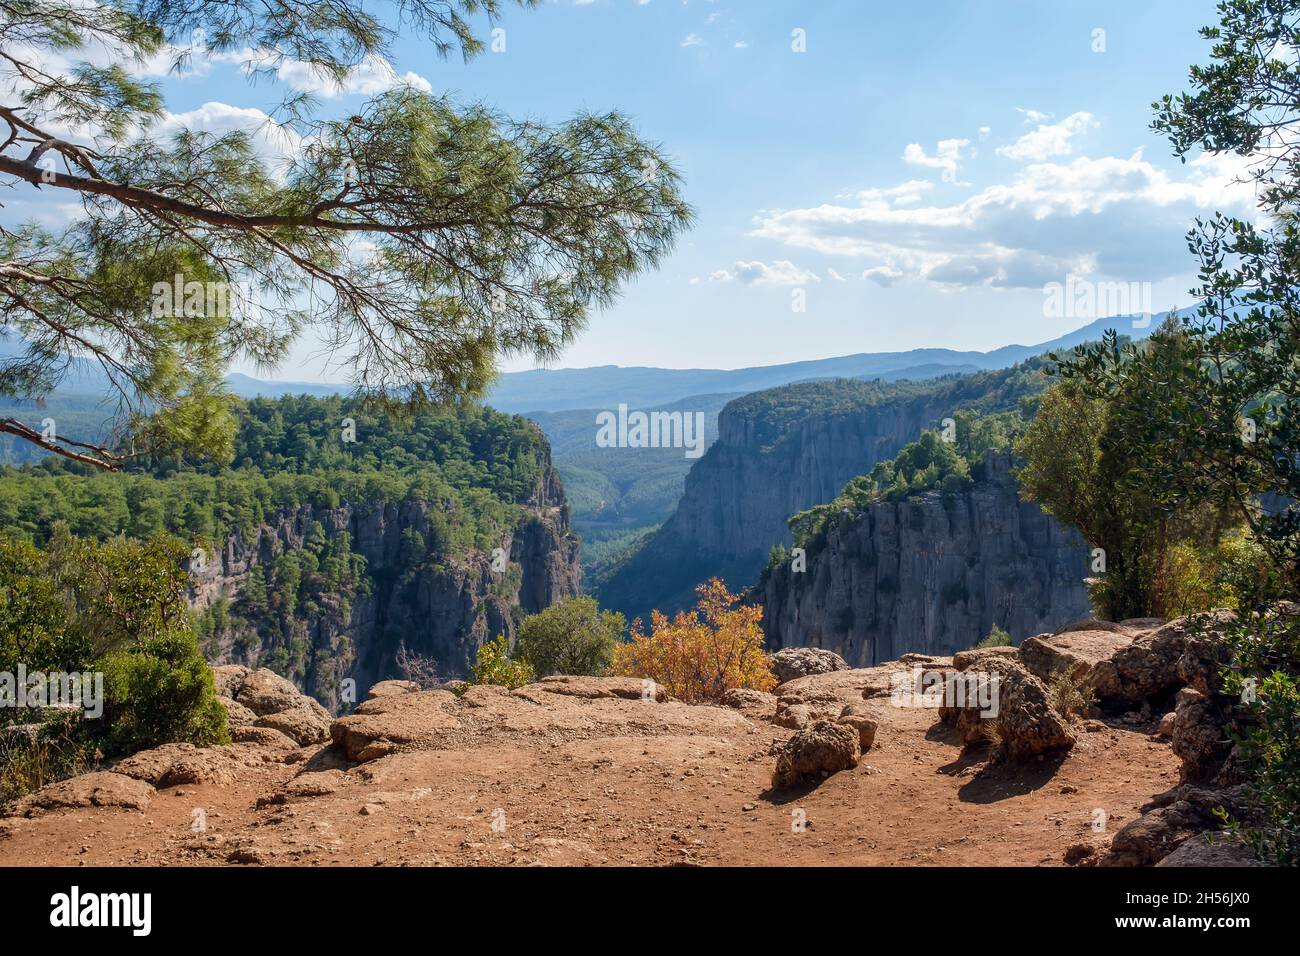 Tazi Canyon in Manavgat near Antalya, Turkey Stock Photo